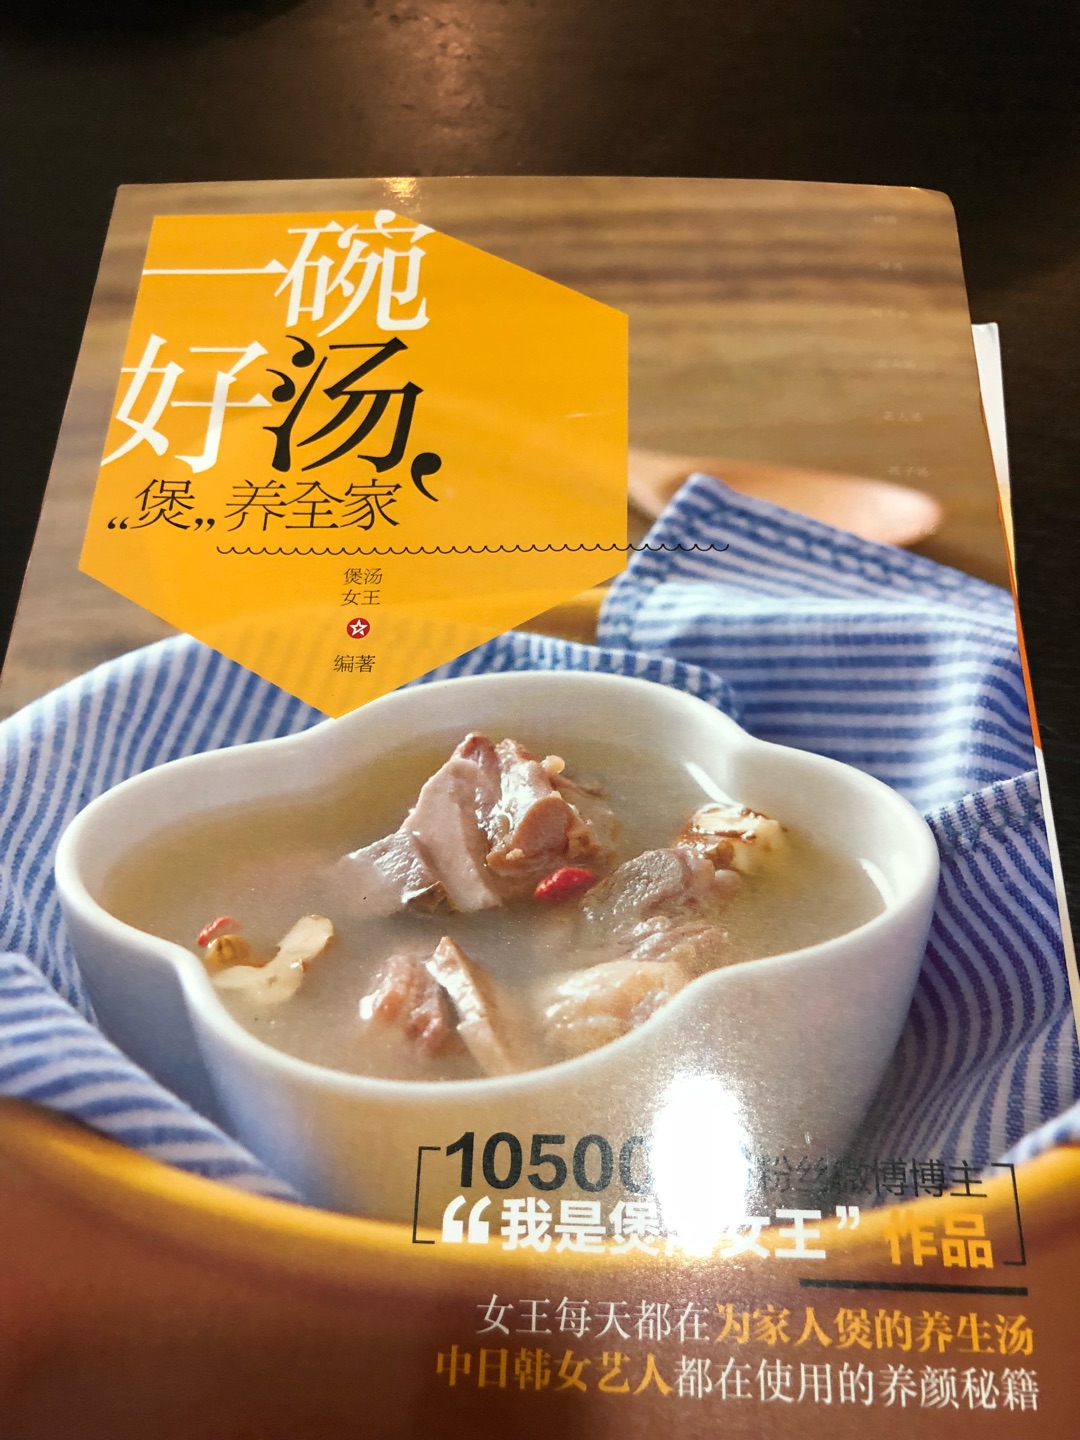 最近痴迷煲各种汤汤水水，这本书把汤按不同的饮用人群分类，很方便针对性的煲汤，不错。